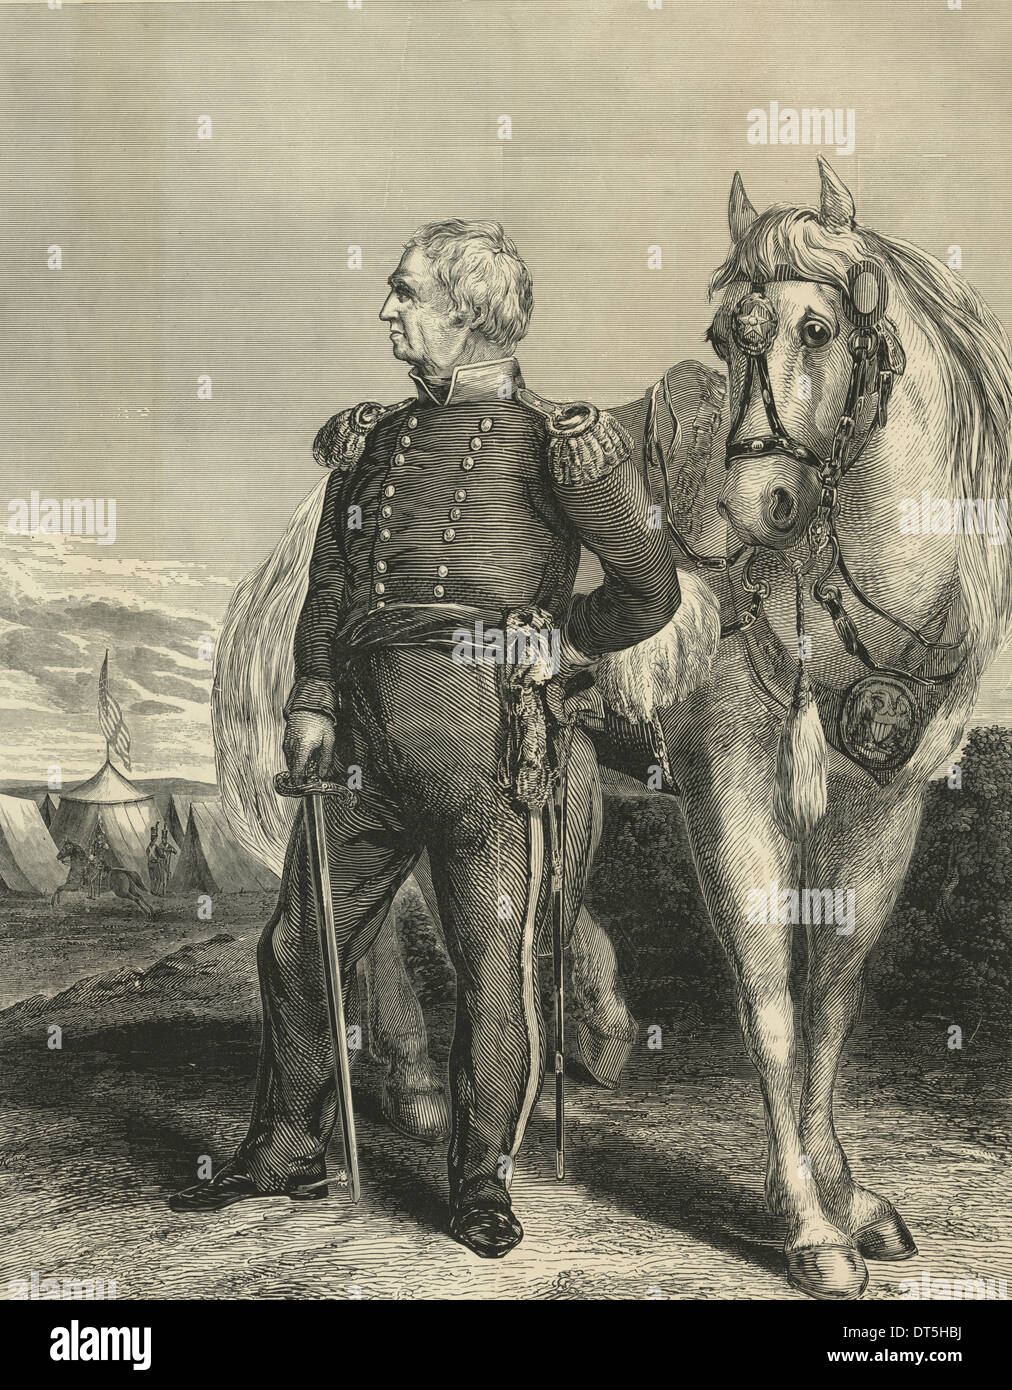 Major General Zachary Taylor - in voller Länge ansehen Porträt des Mexikanisch-Amerikanischen Krieges Held Zachary Taylor. Obwohl im Jahre 1847 ausgegeben, wurde dieser Posterformat Holzschnitt wahrscheinlich mit 1848 US-Präsidentschaftswahlkampf im Verstand entworfen. Stockfoto